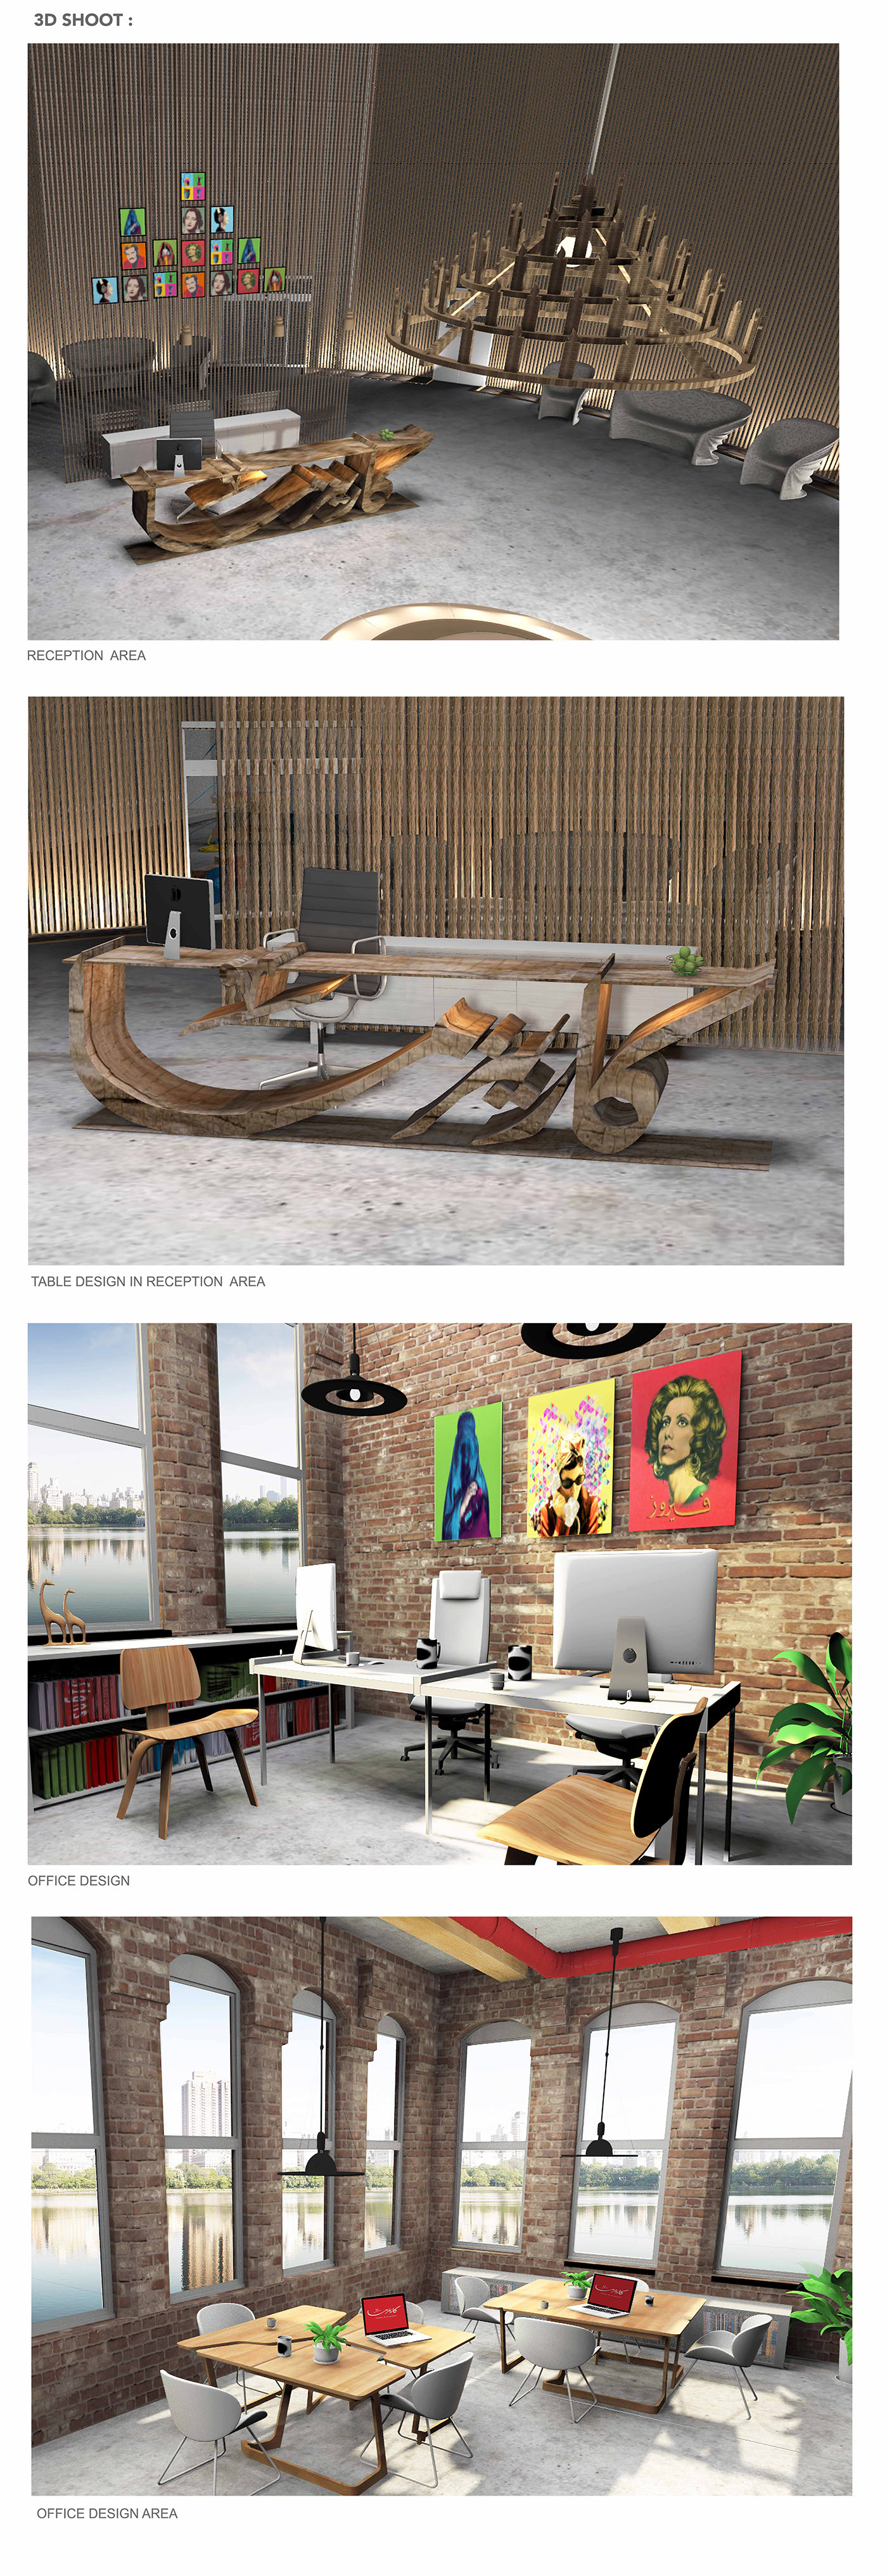 Charisma studio Interior design Office Design furniture Office decor interiordesign